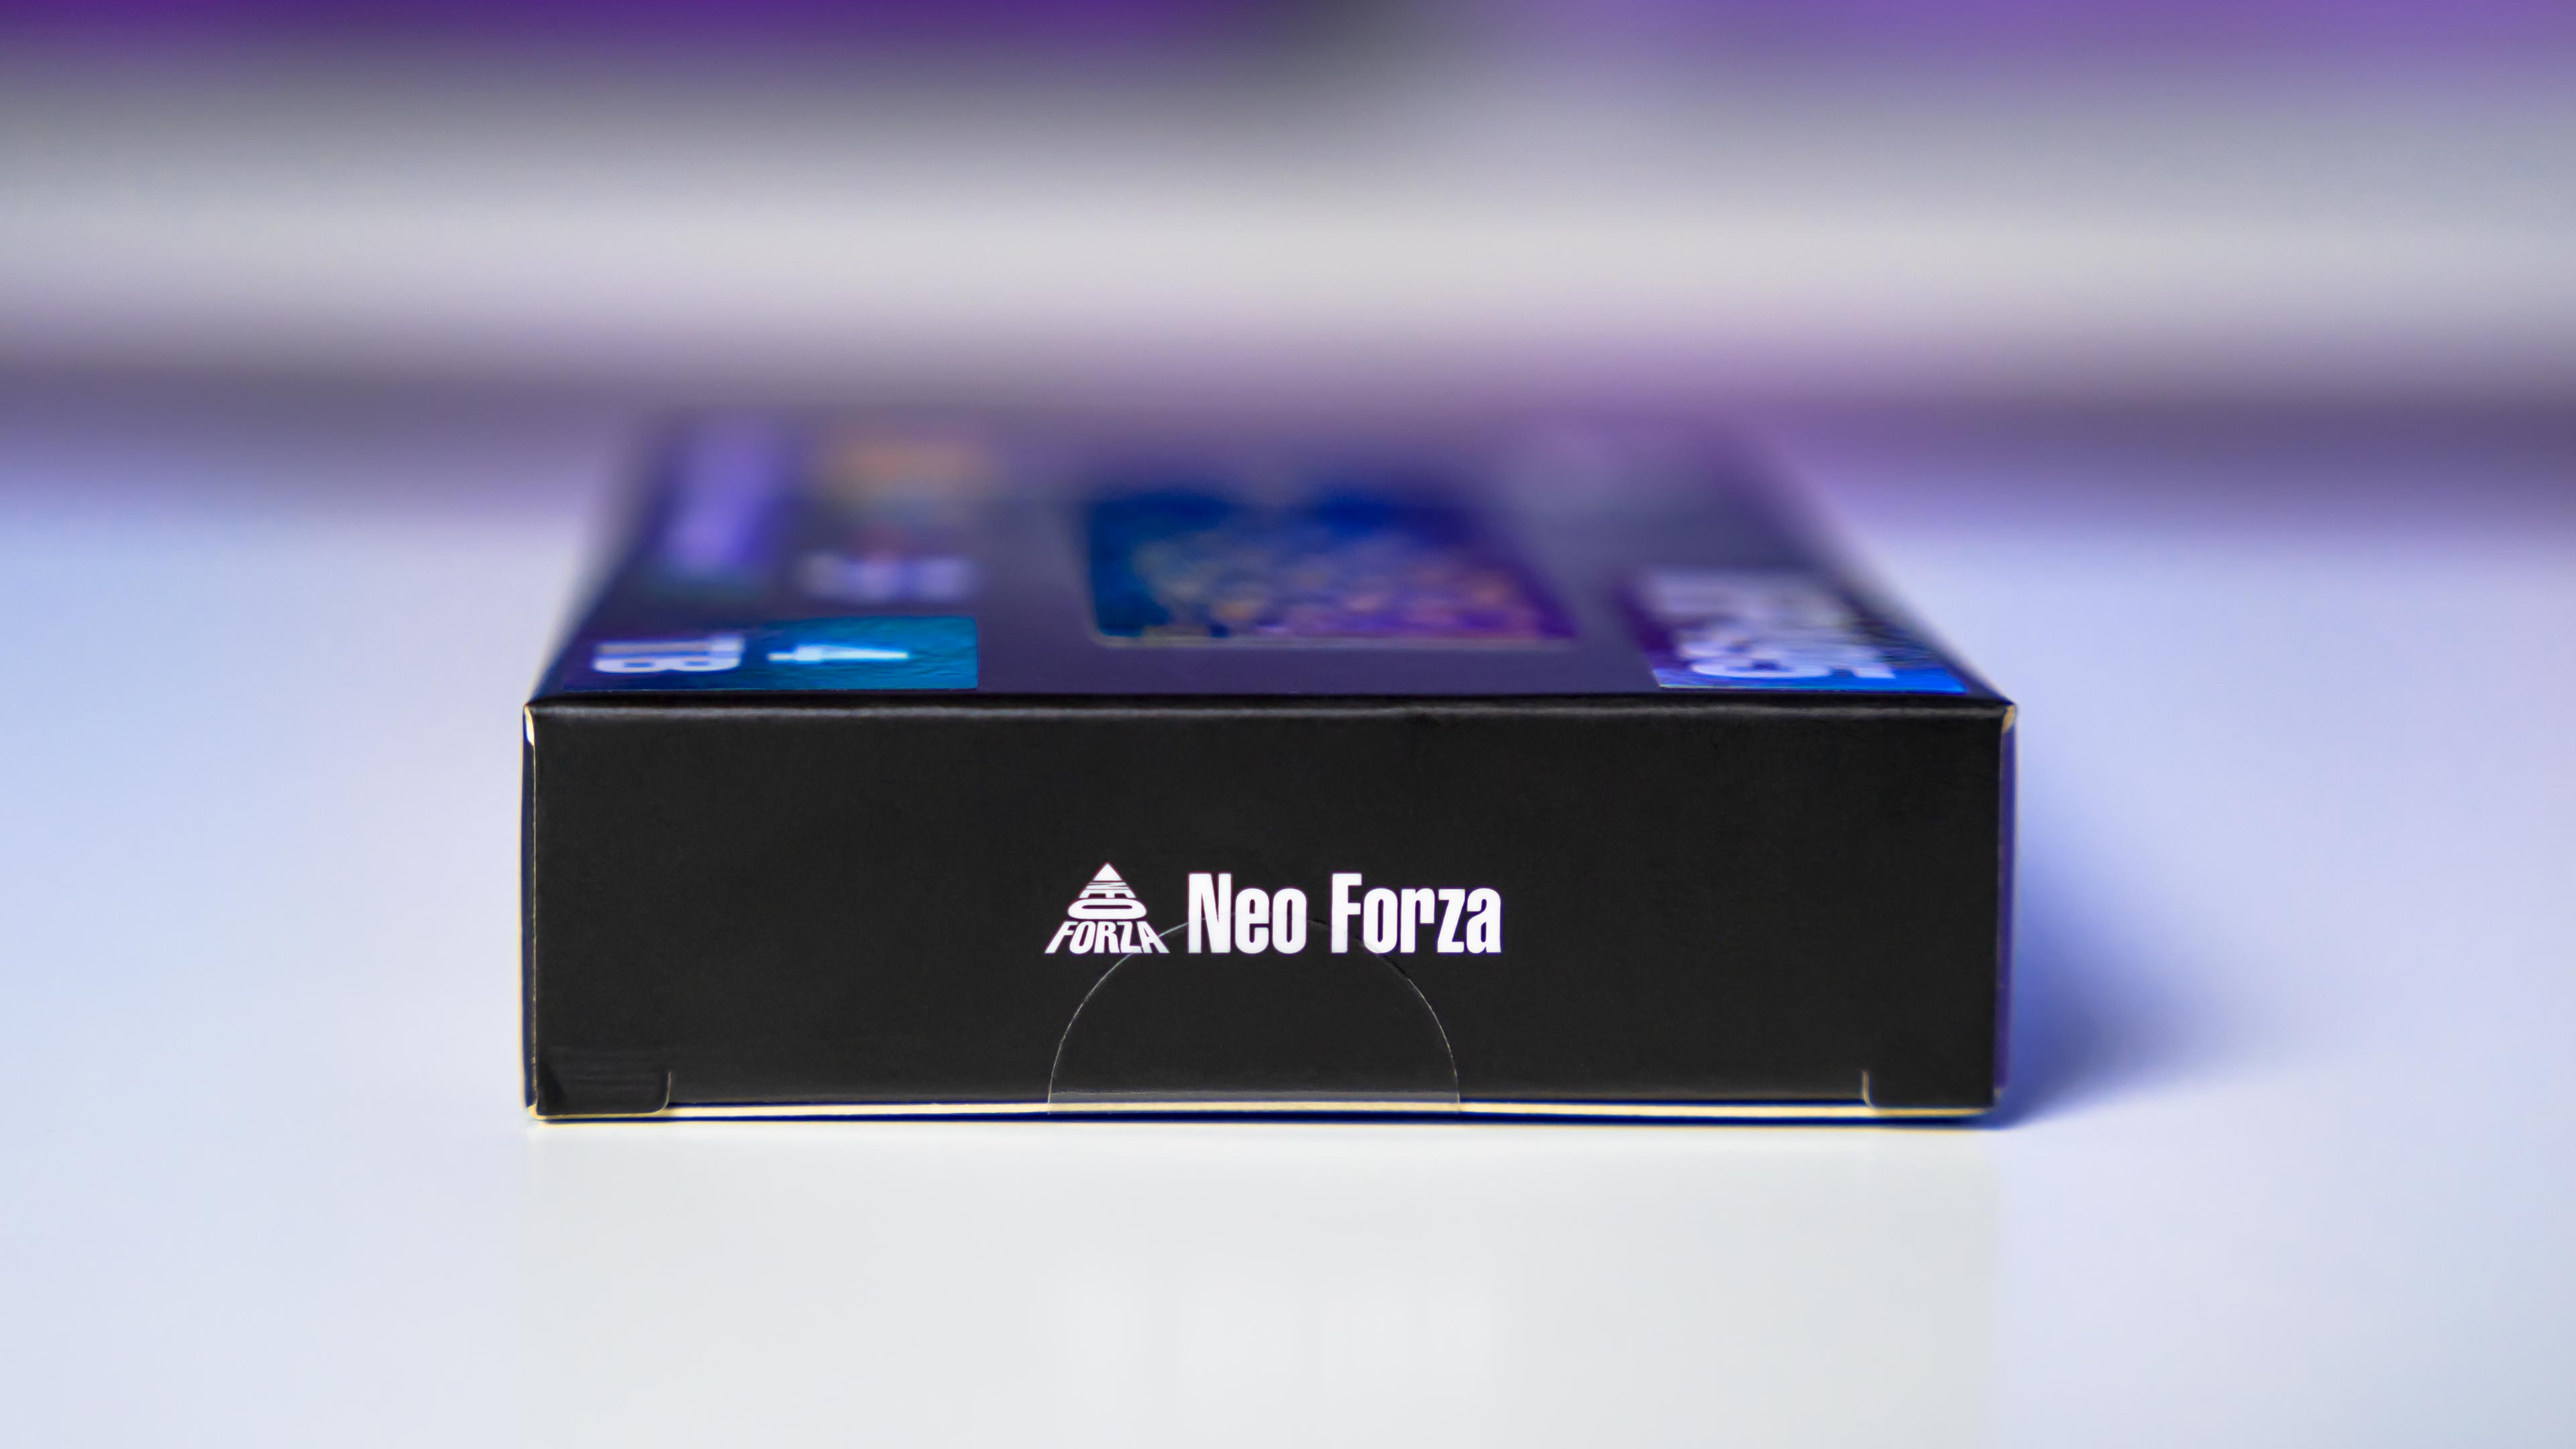 Neo Forza NFP495 4TB Box (7)